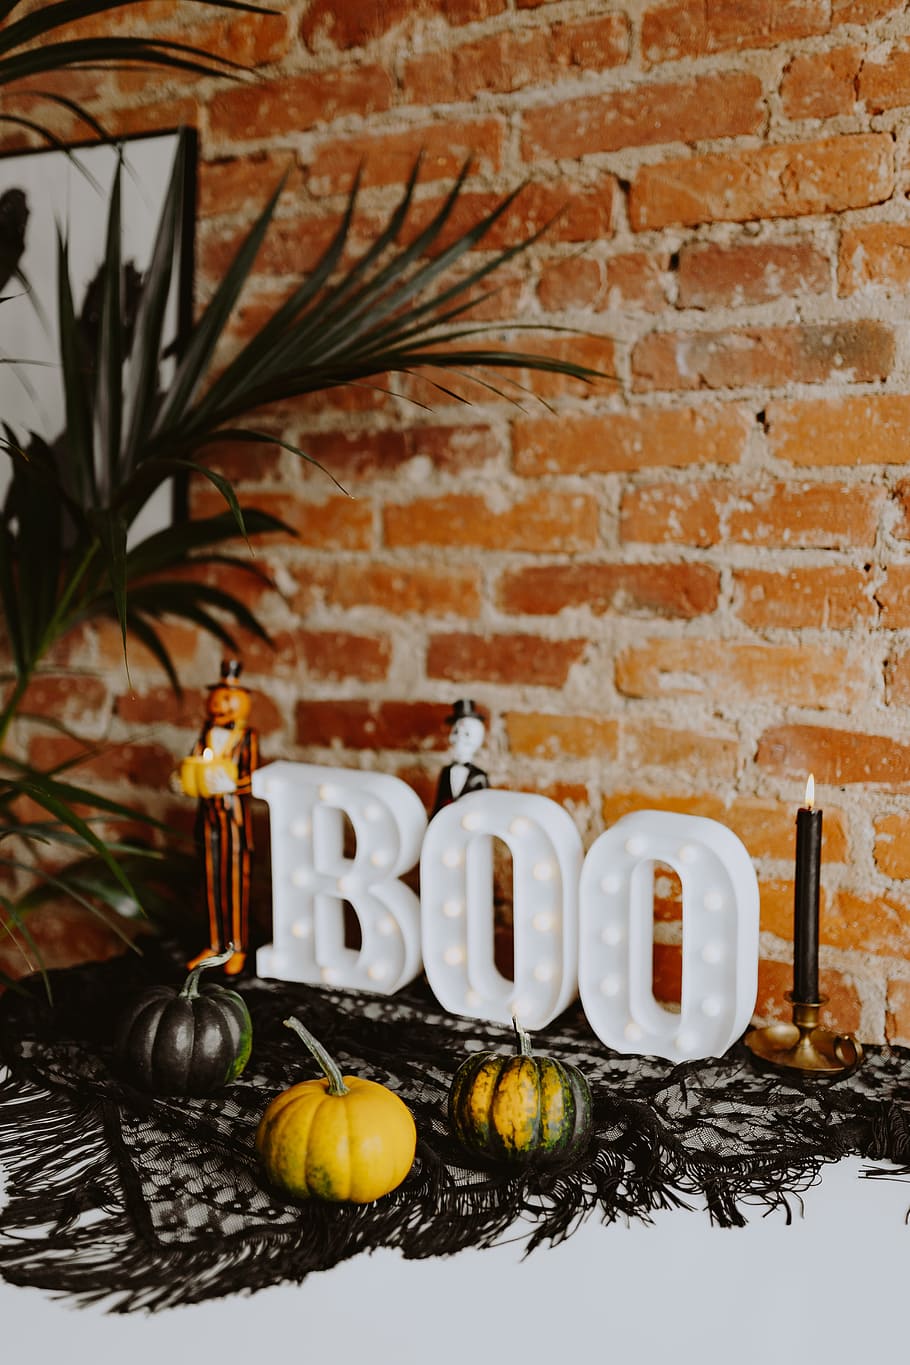 decoraciones de halloween, boo, letras, halloween, calabaza, celebración, otoño, decoración, octubre, fruit